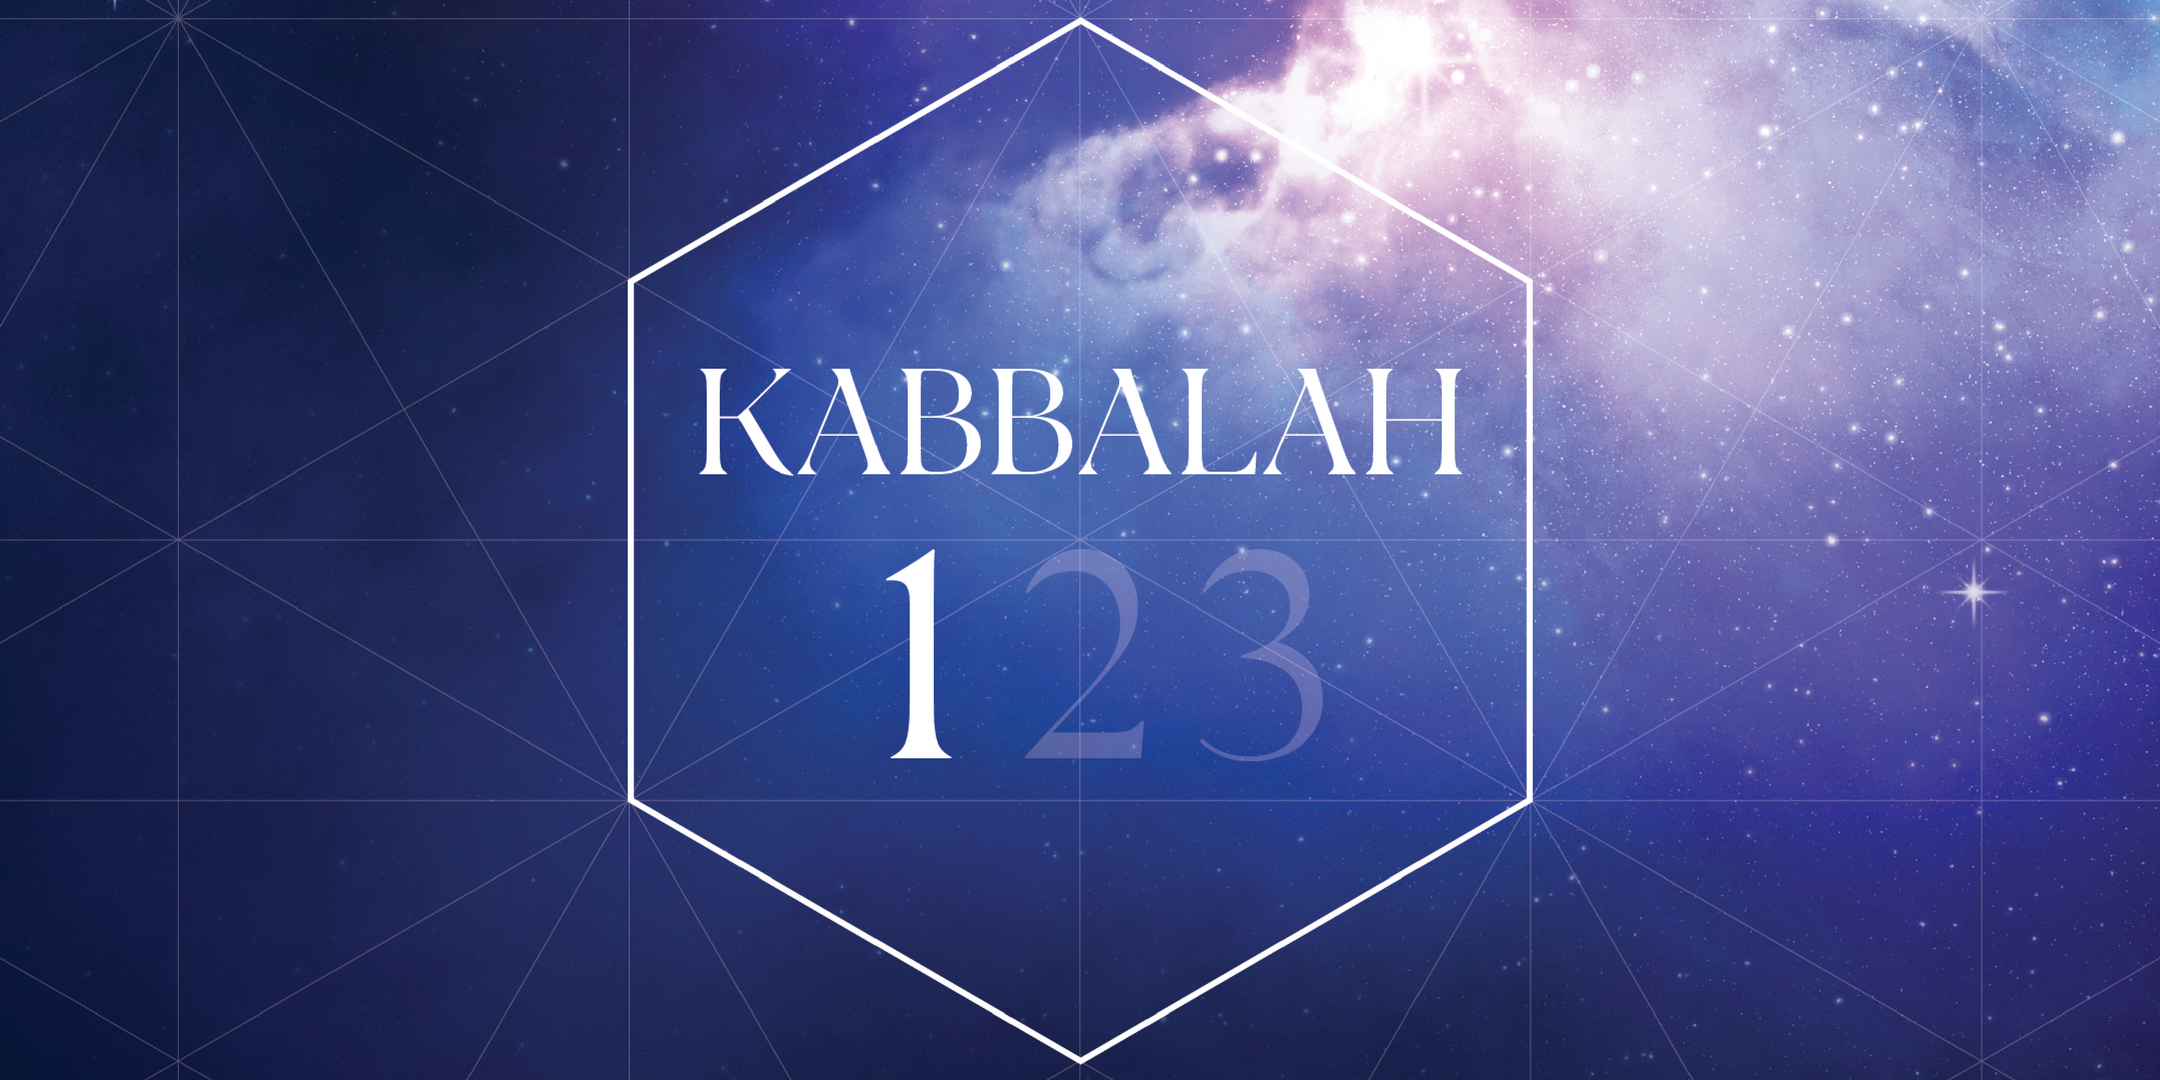 Kabbalah 1: Wed April 29, David Grundman